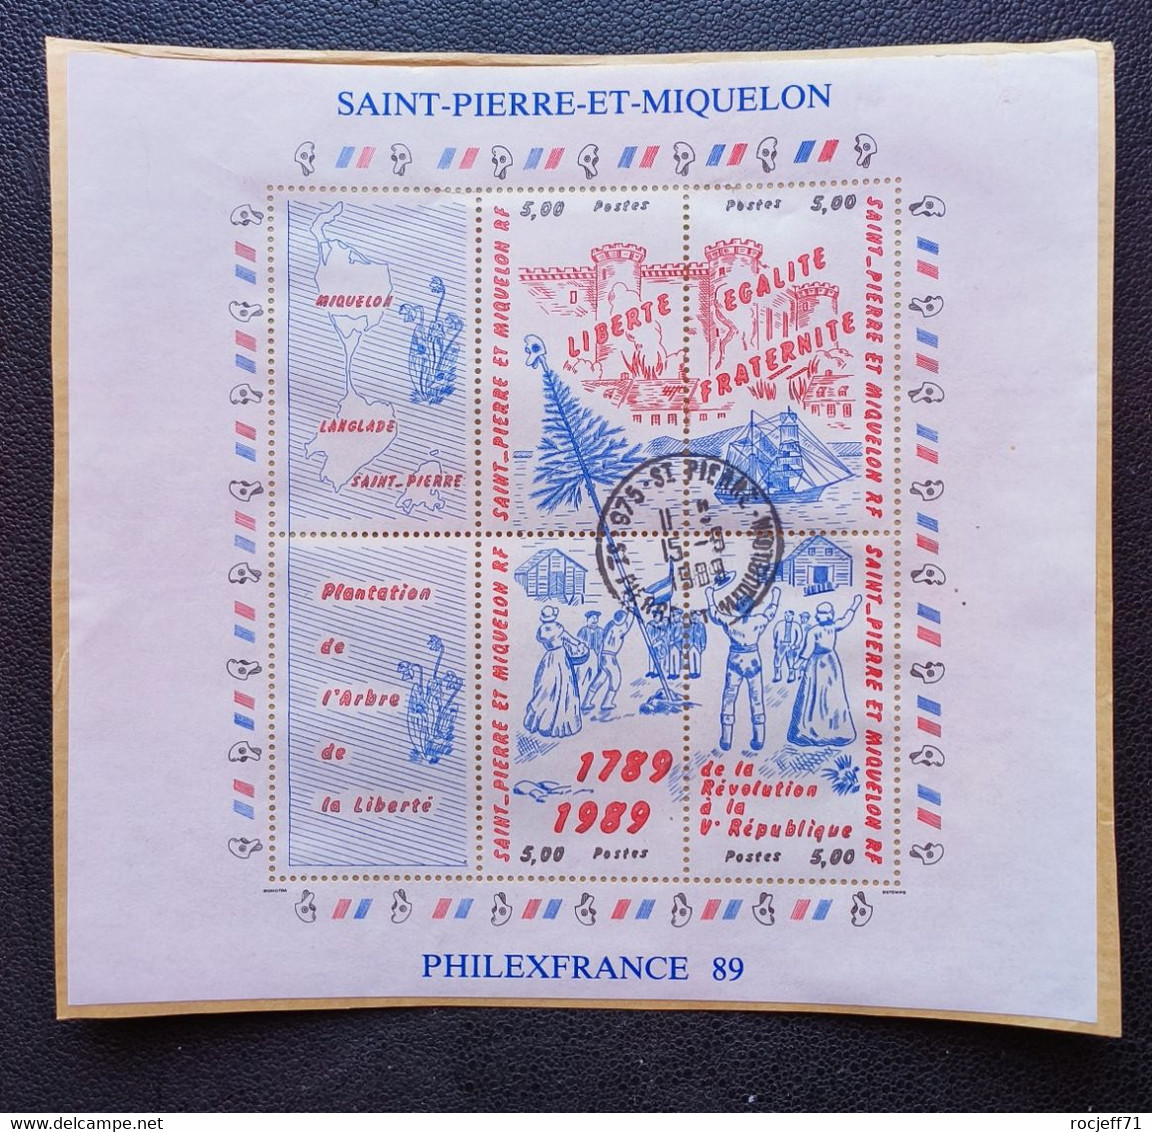 02 - 23  //  Saint Pierre Et Miquelon - Bloc Philexfrance 1989 - Used Stamps